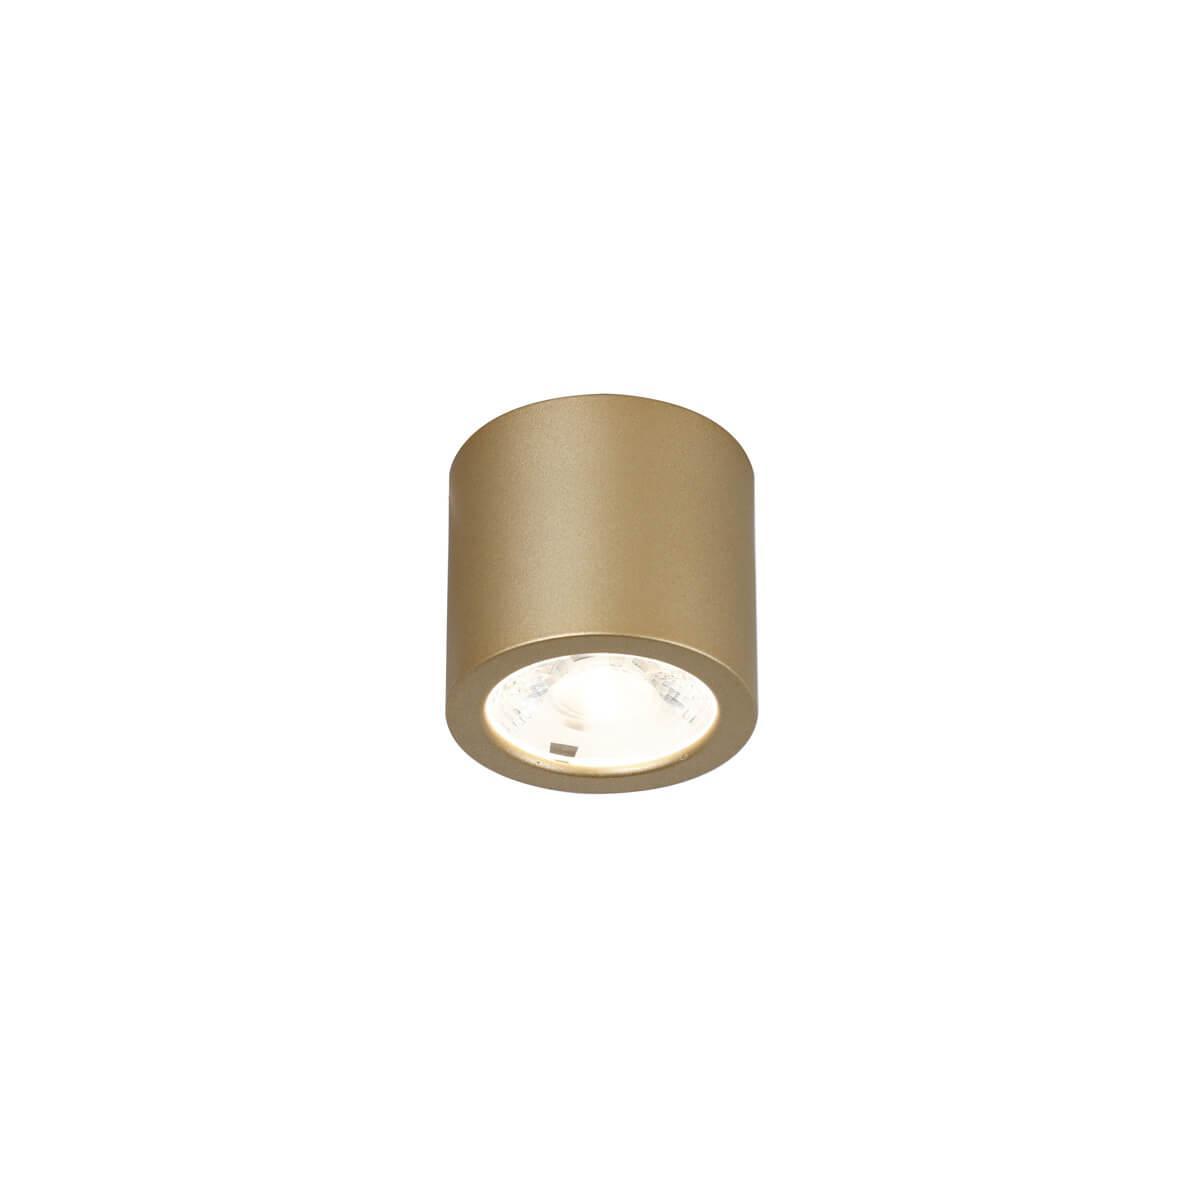 Потолочный светодиодный светильник Favourite Deorsum 2807-1C потолочный светильник deorsum led 7вт